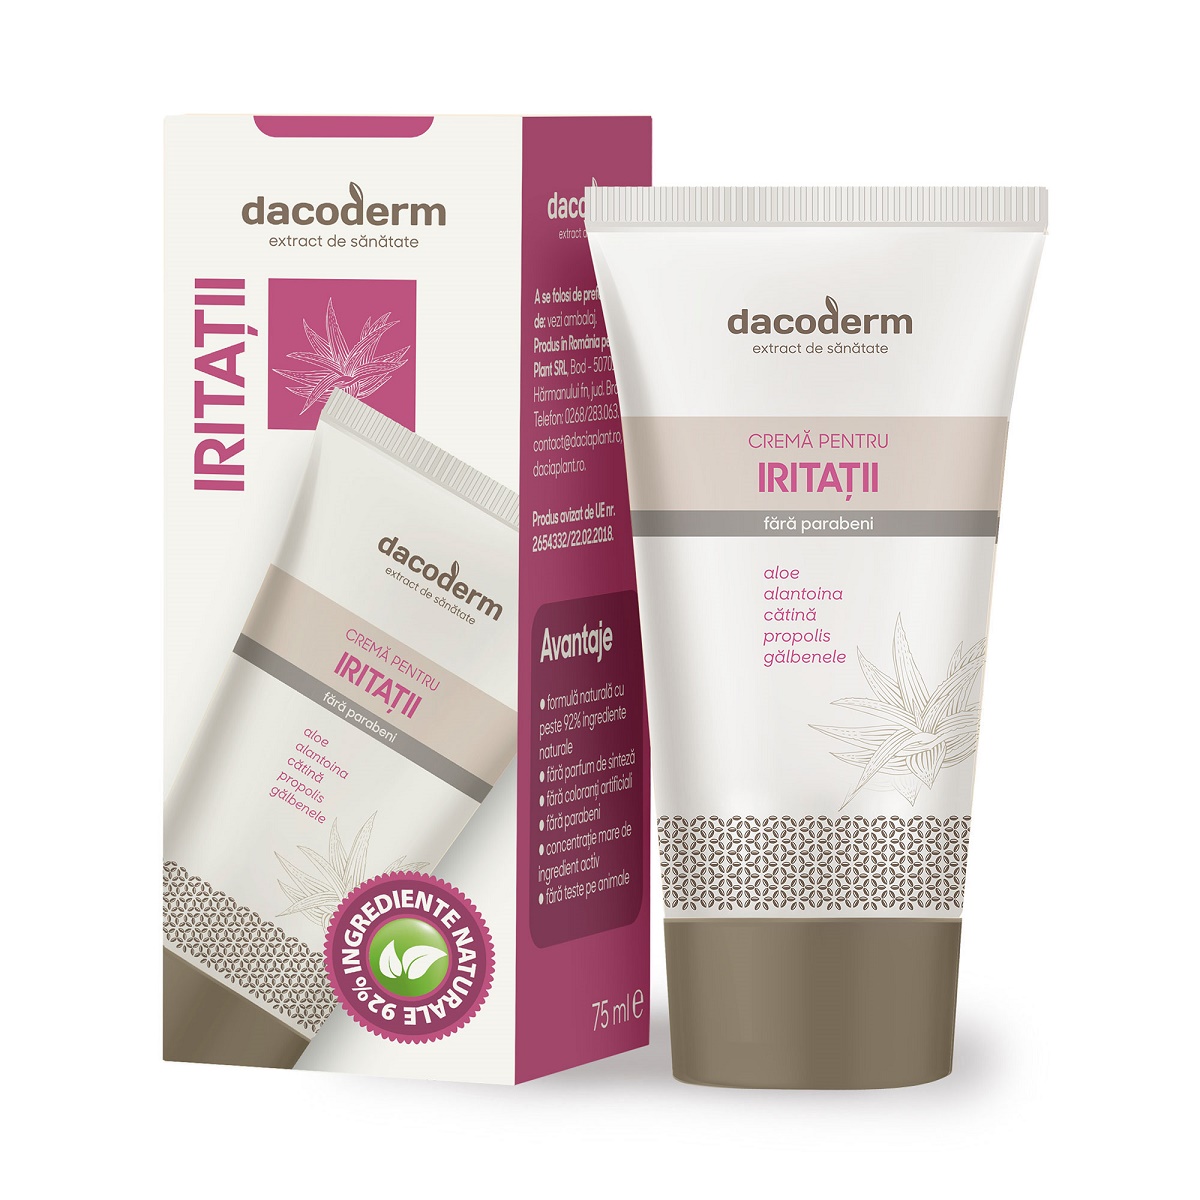 Cremă pentru iritații Dacoderm, 75 ml, Dacia Plant